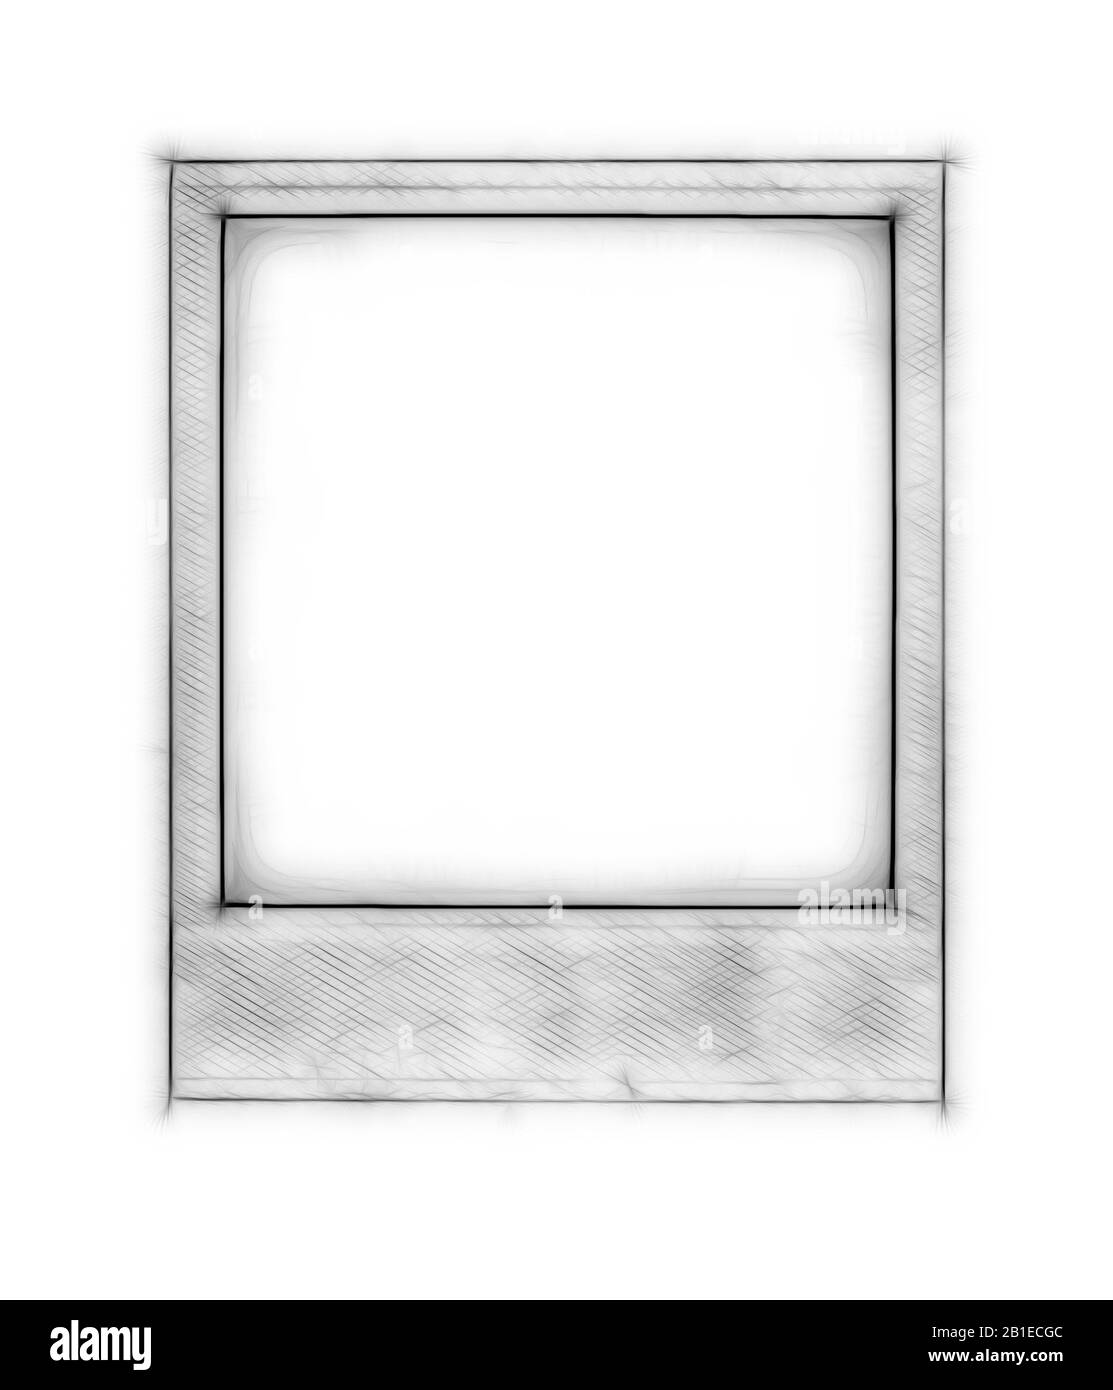 Graphique d'ordinateur, cadre d'image gris sur fond blanc Banque D'Images